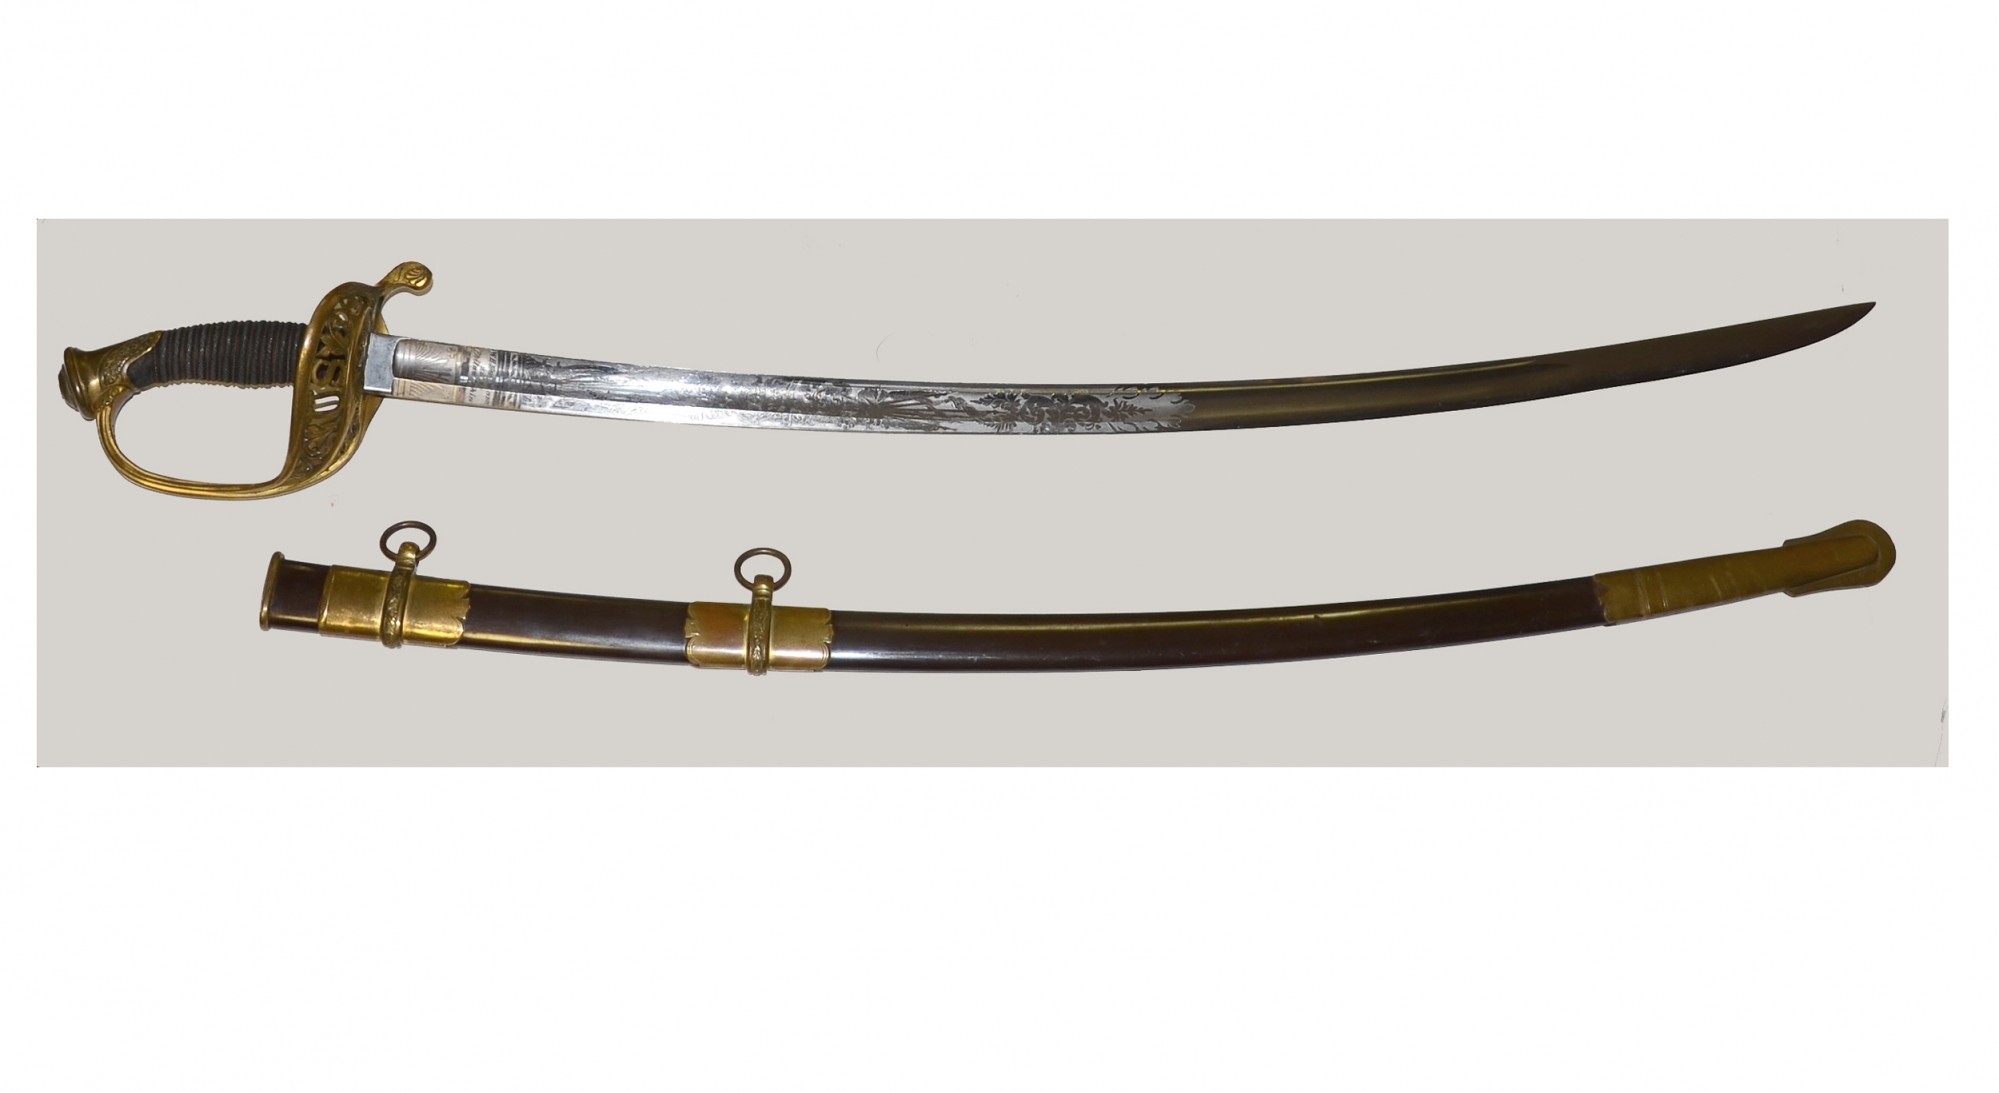 1850 Civil War U.S Military Army Staff Field Etch Officers Sword 